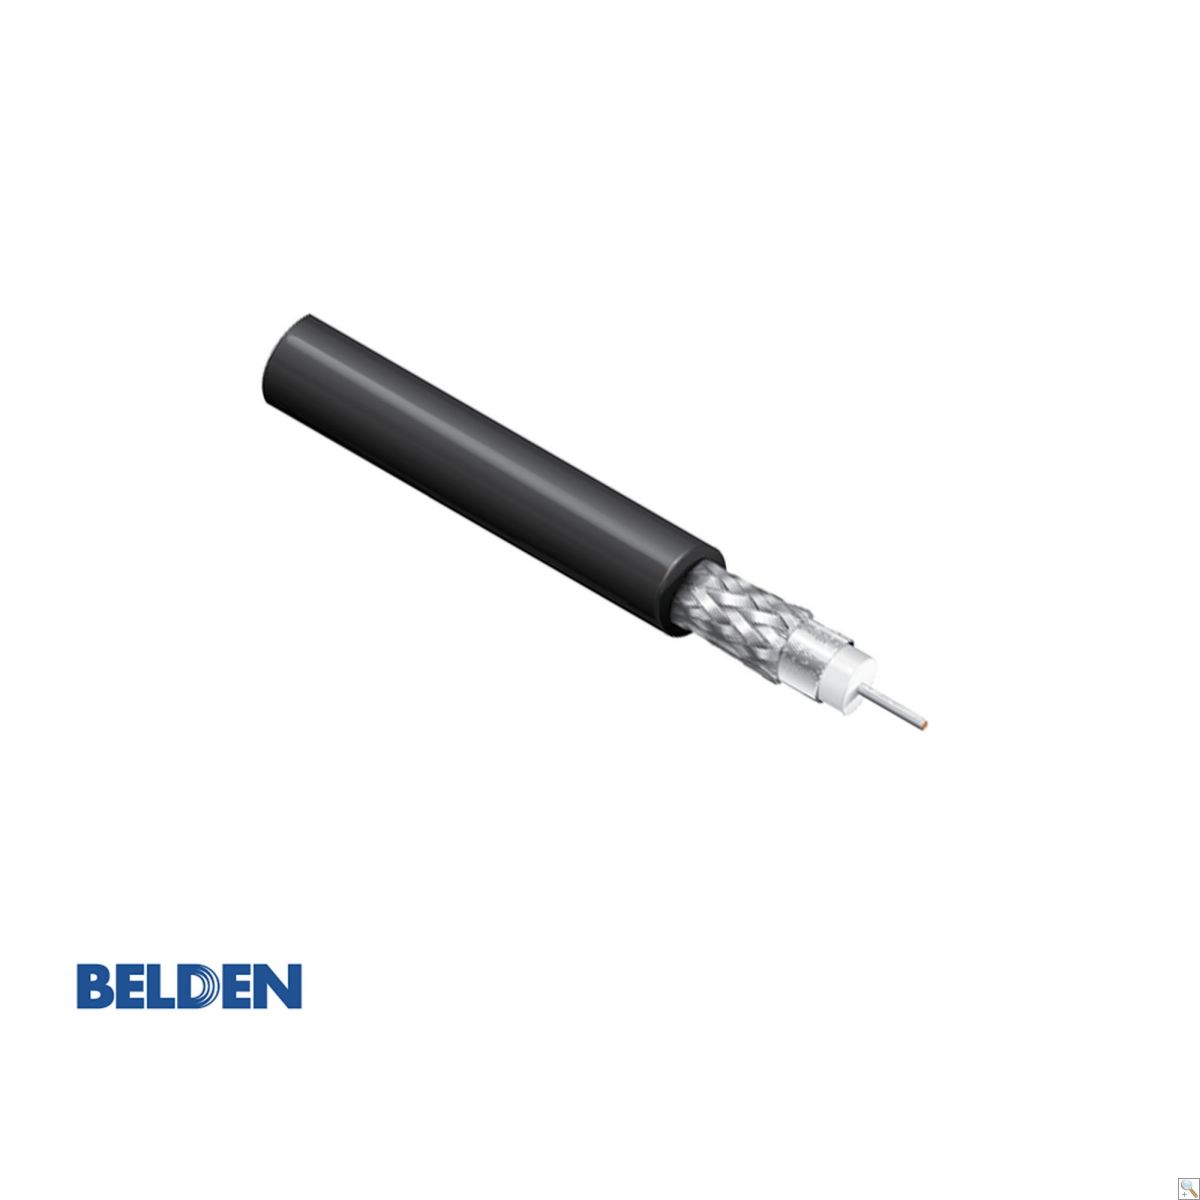 Belden 4855R - 305M